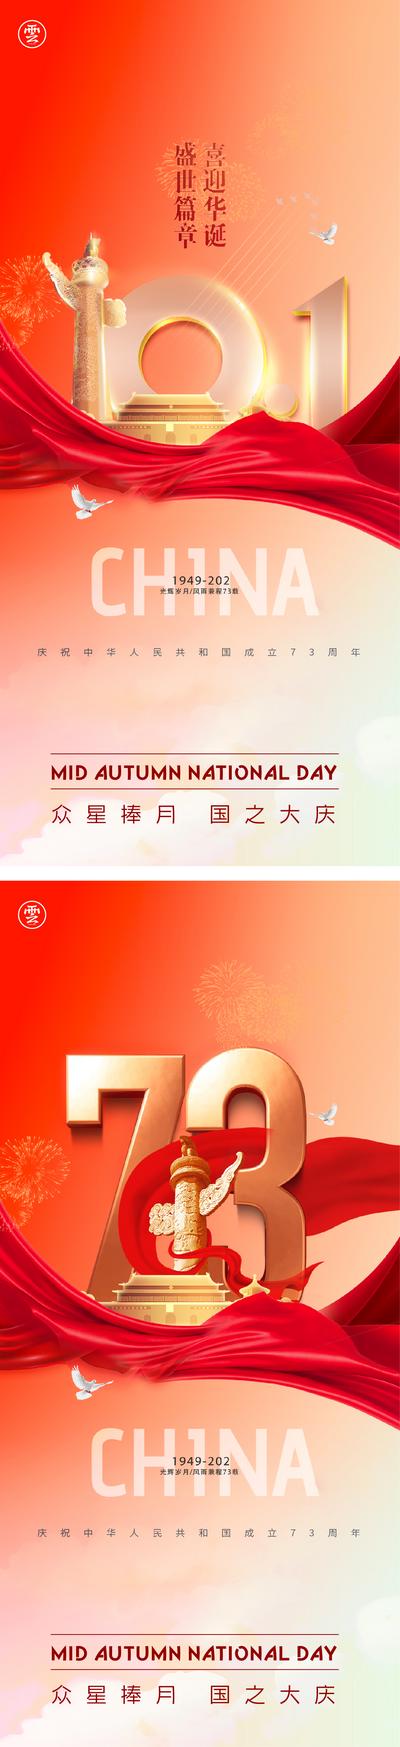 南门网 广告 海报 节日 国庆 73周年 数字 系列 丝绸 飘带